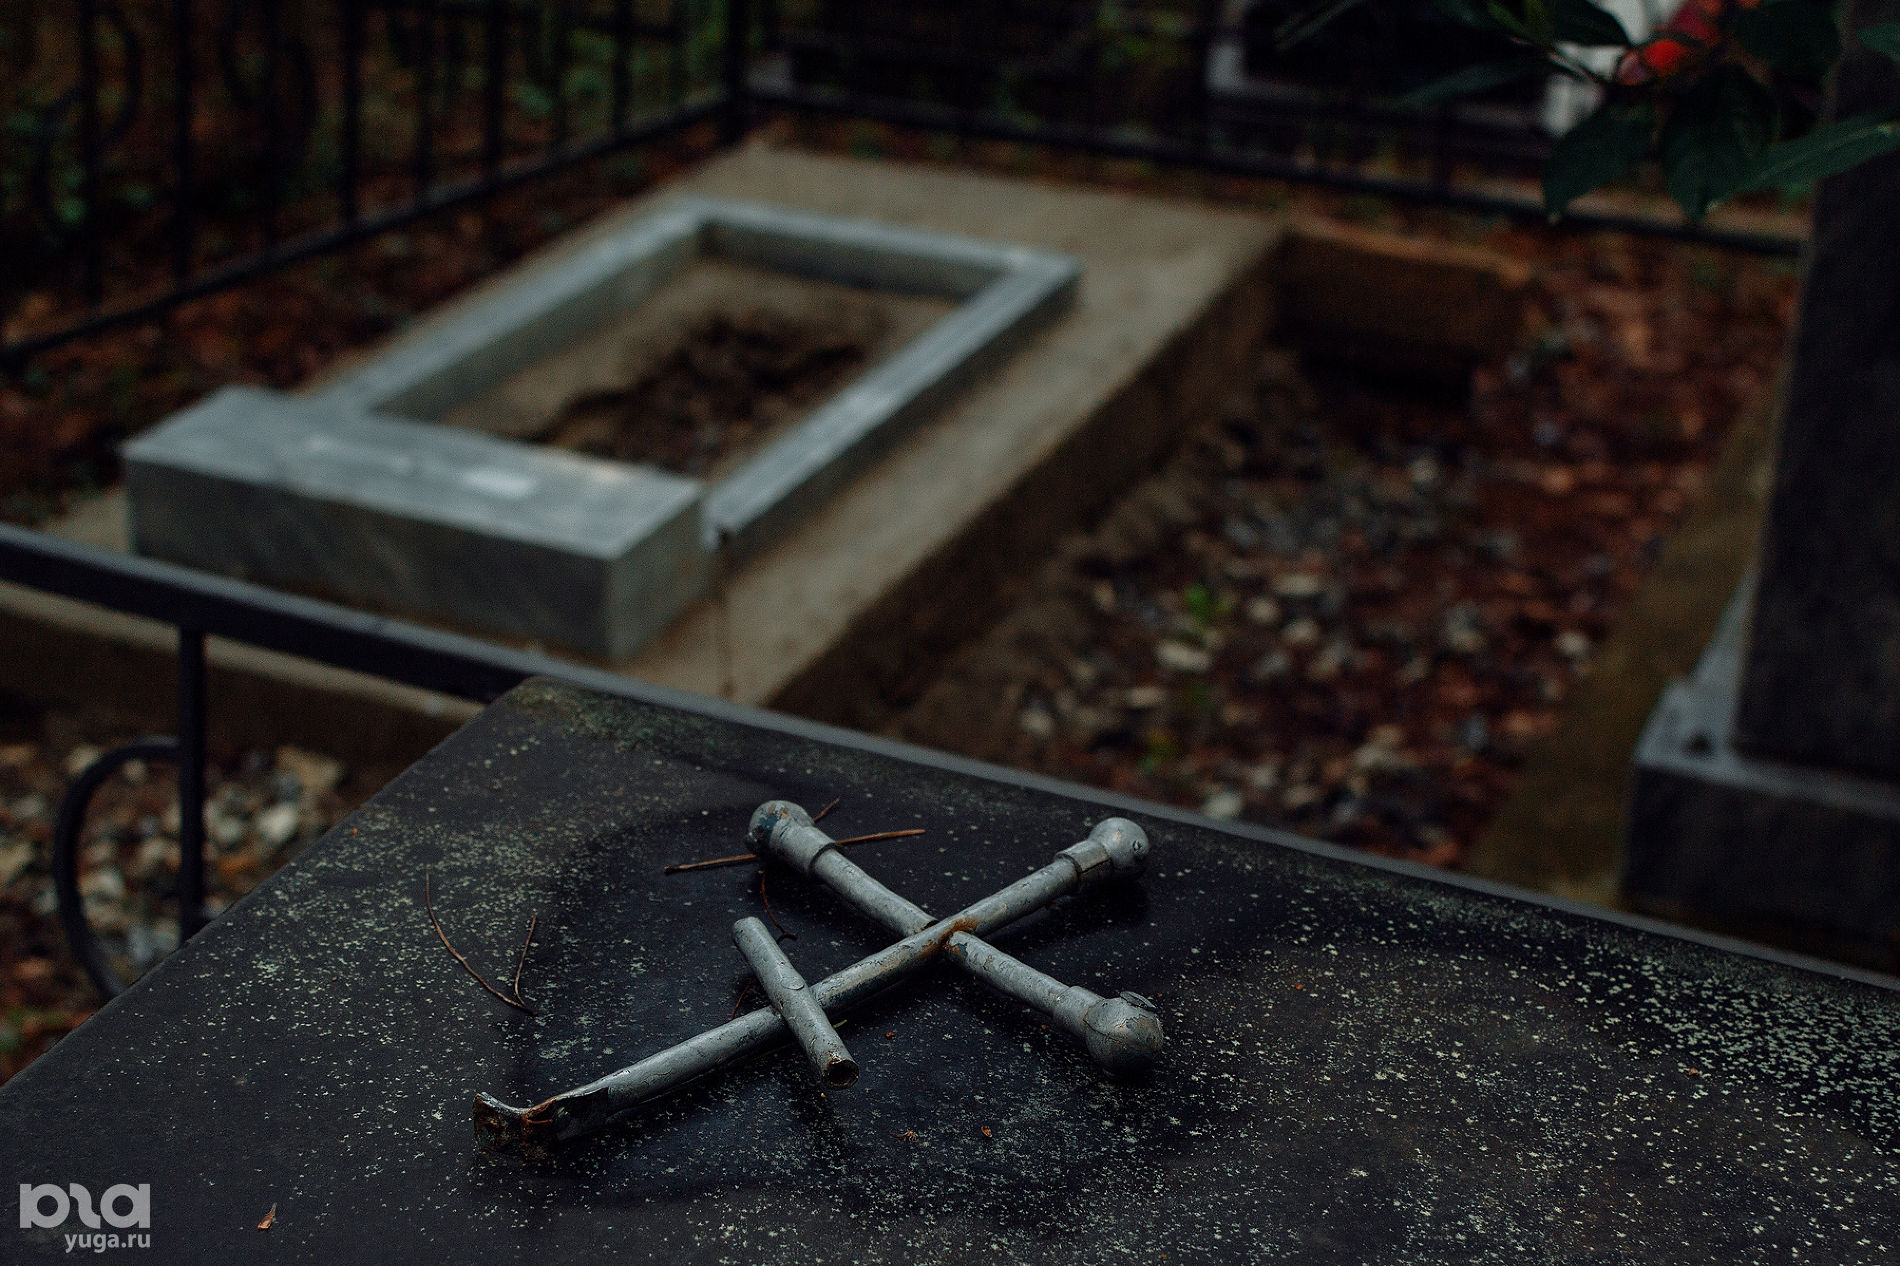 Дивноморское кладбище © Фото Юли Шафаростовой, Юга.ру